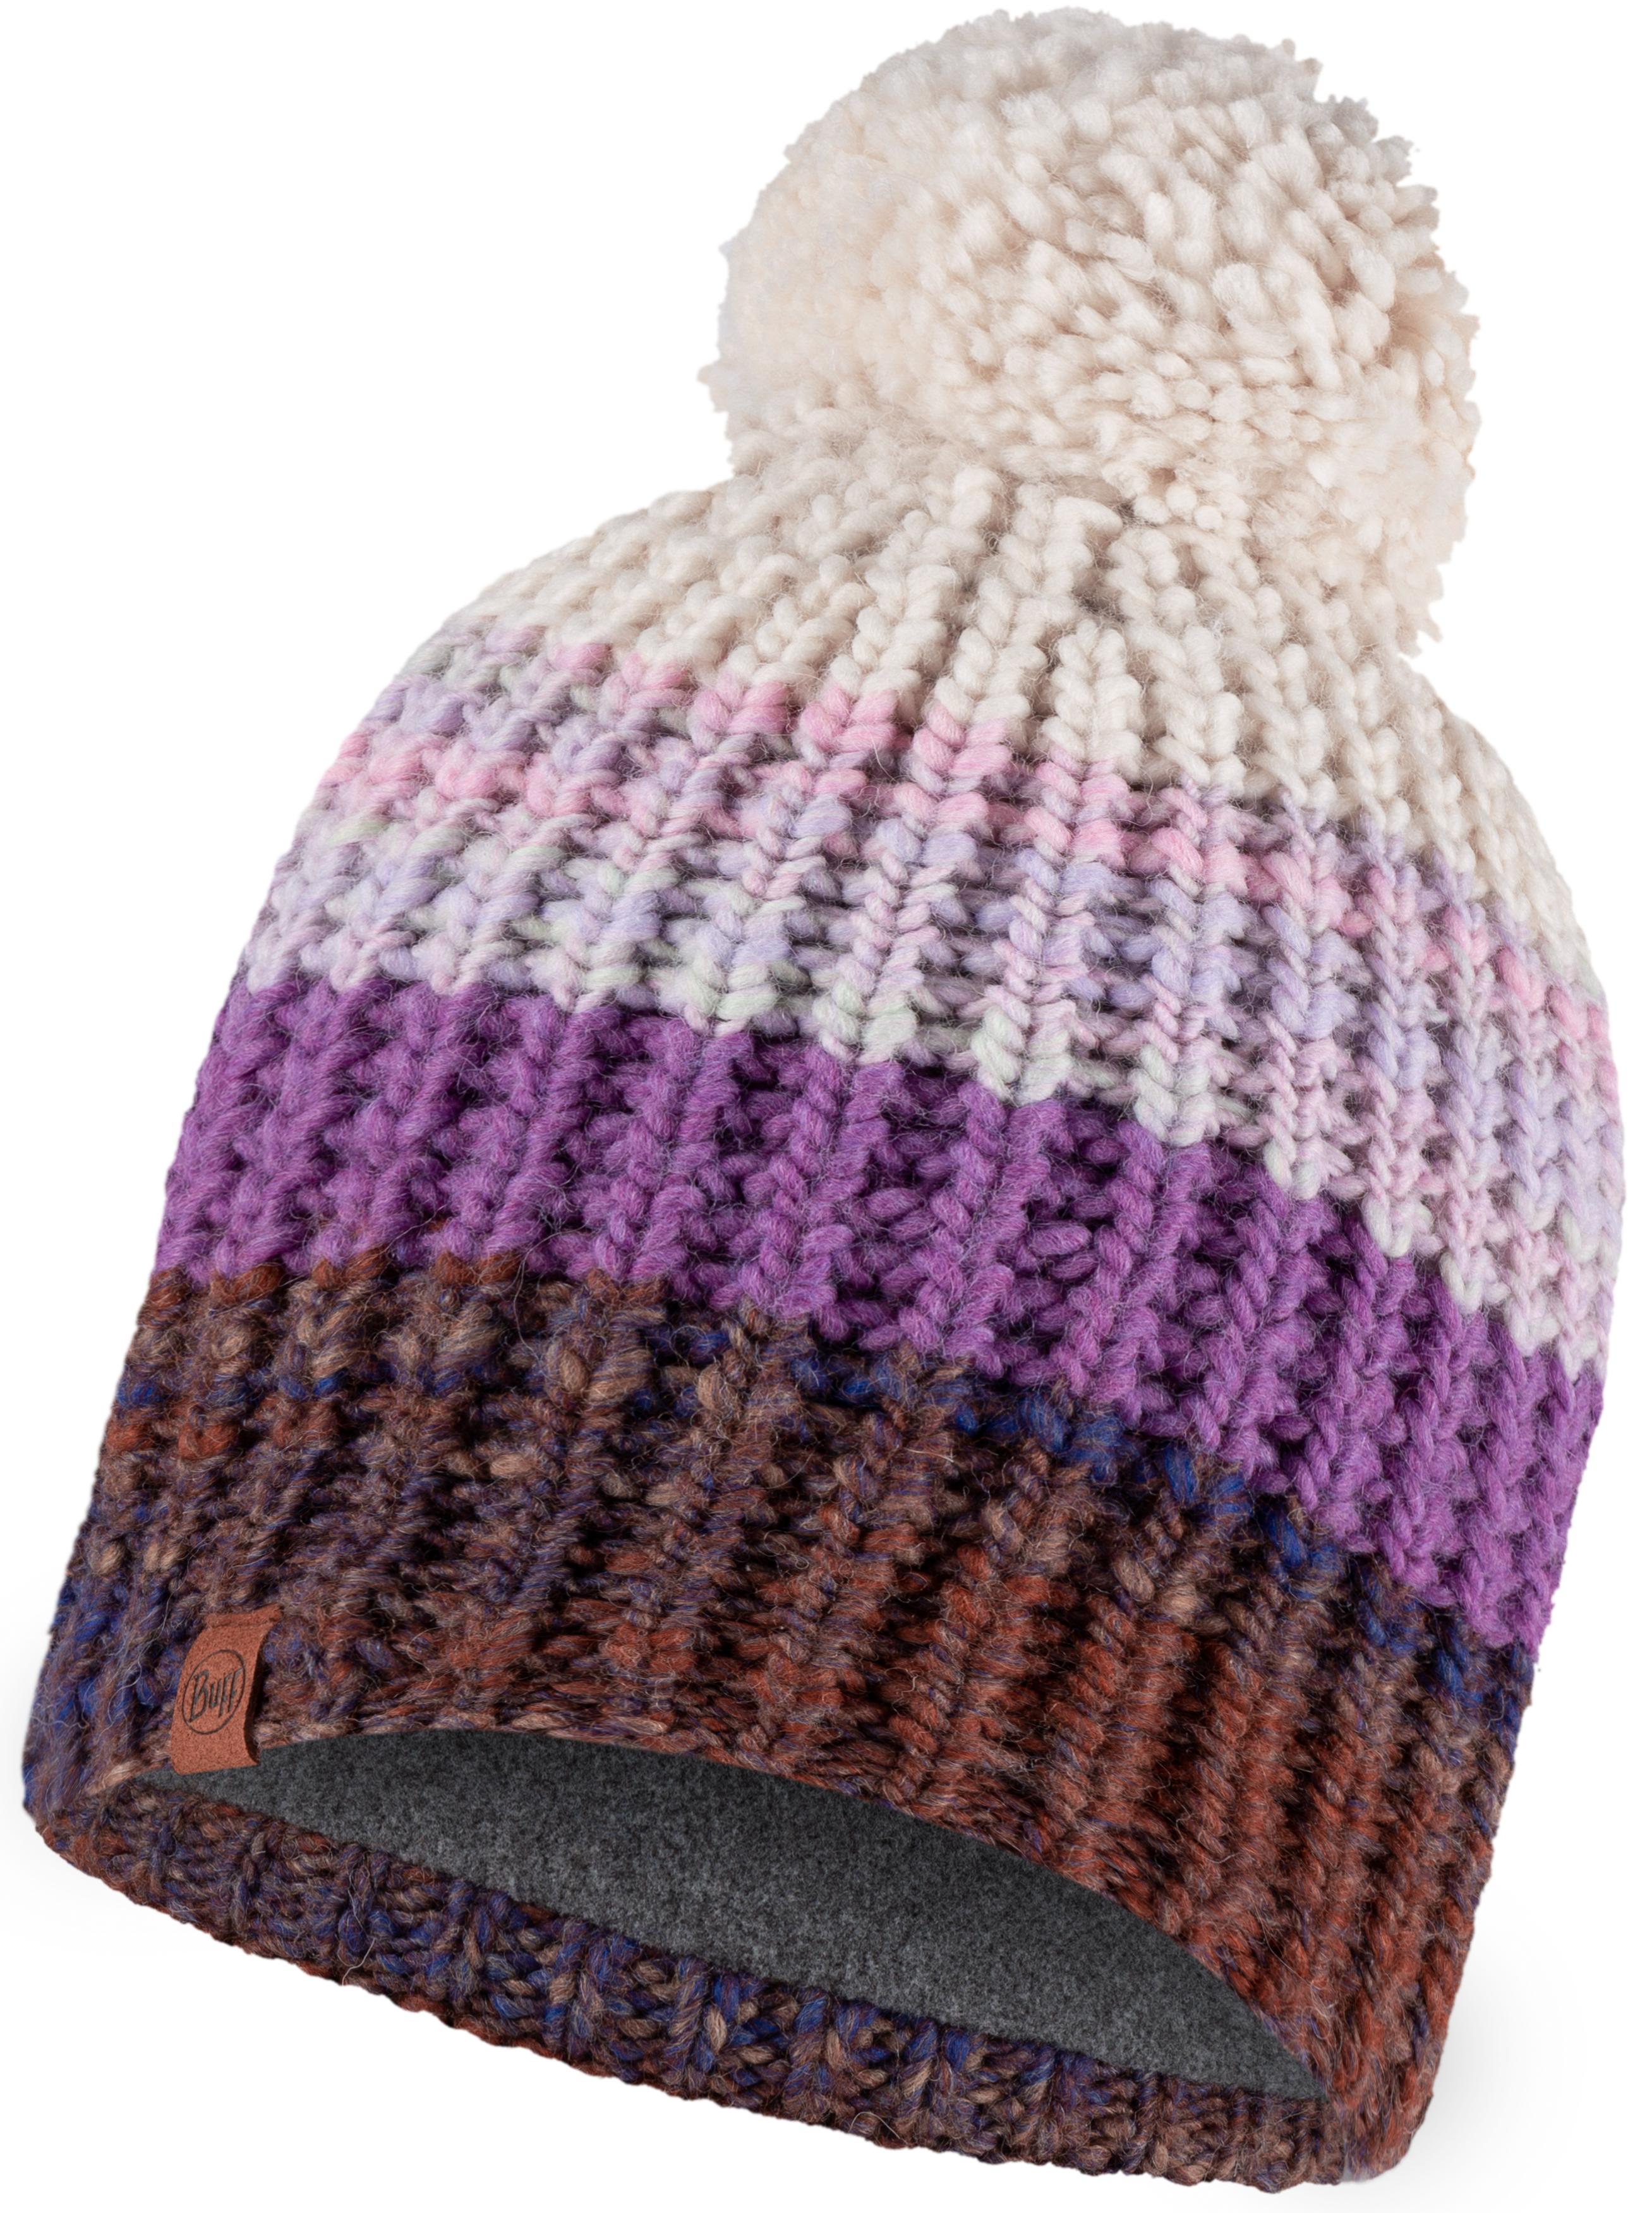 Шапка бини унисекс Buff Knitted & Fleece Band Hat Alina бордовая, фиолетовая, one size